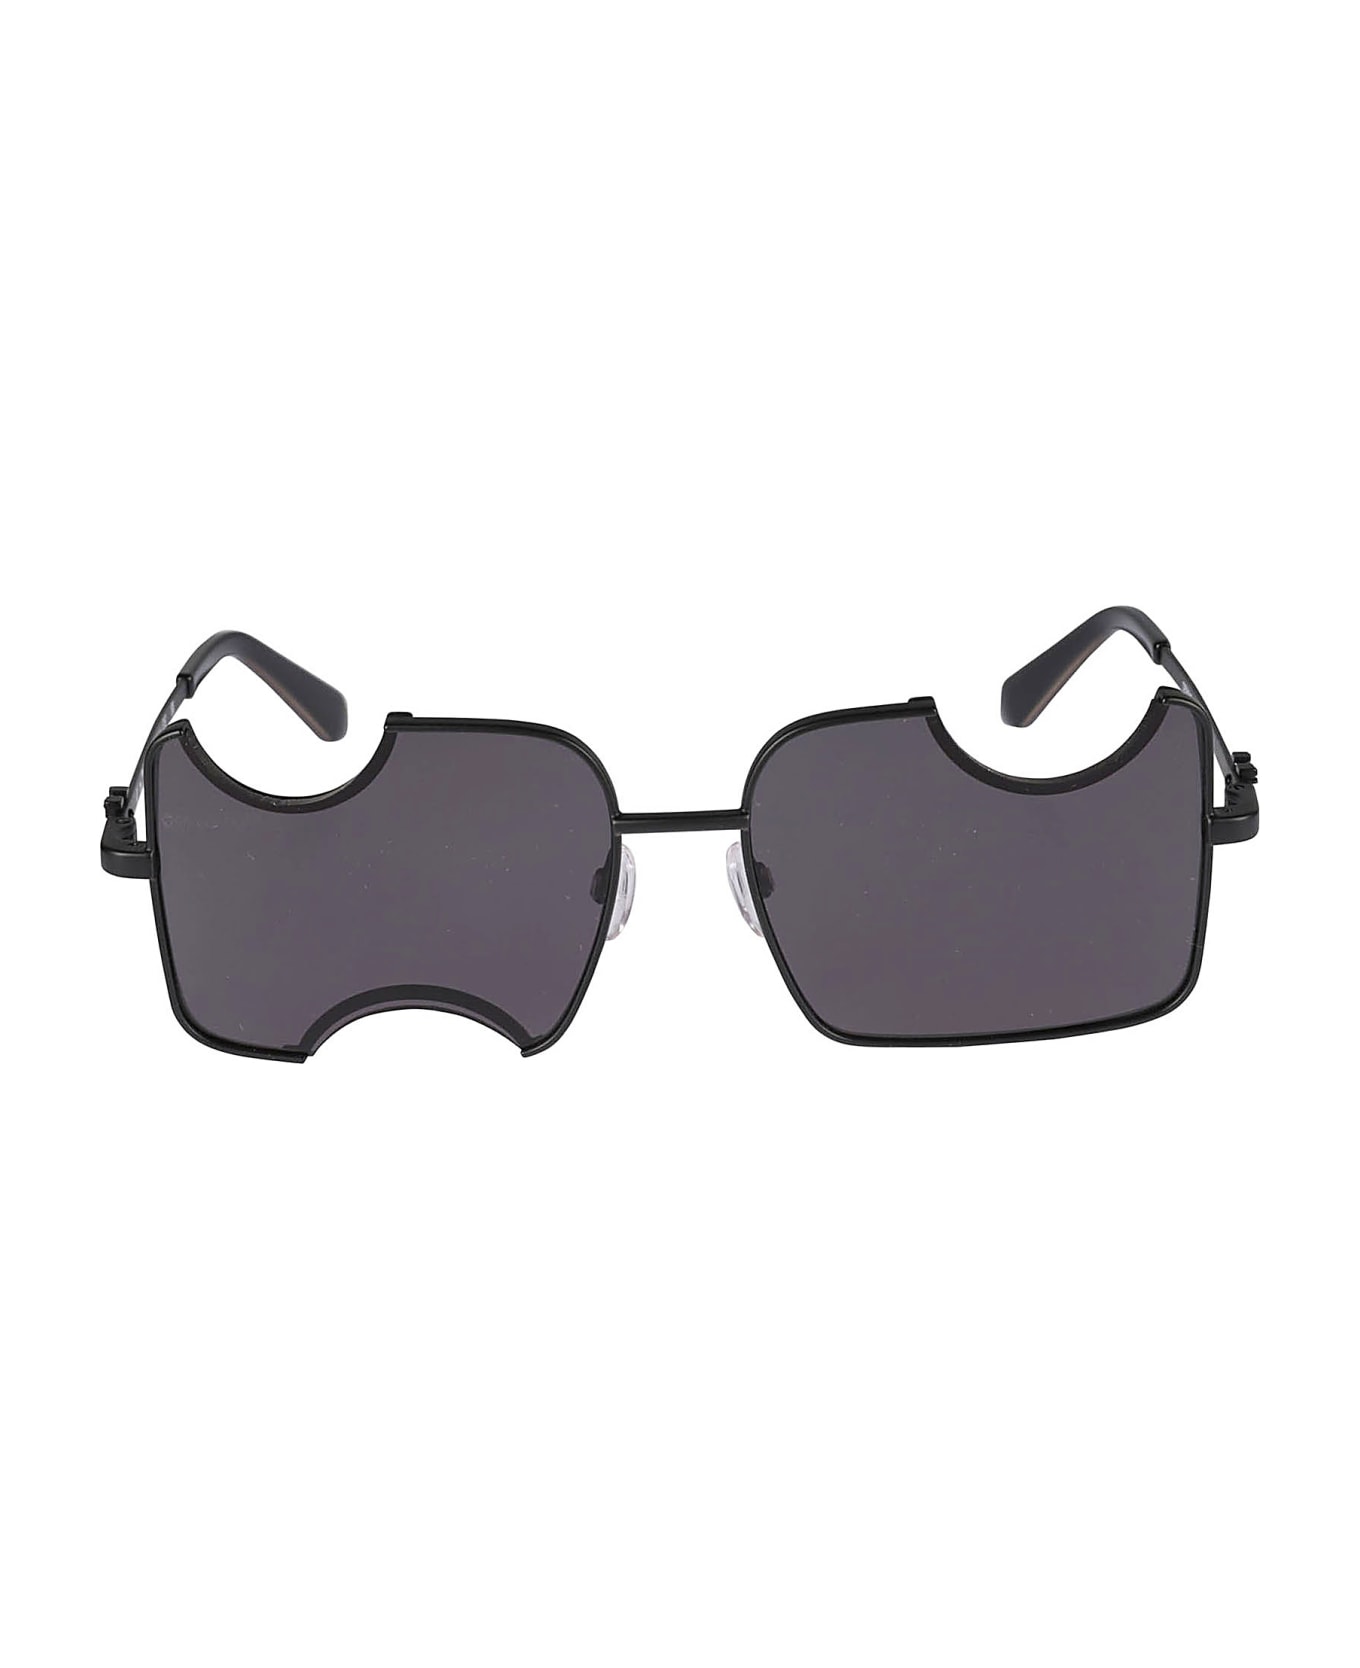 Off-White Salvador prada Sunglasses - Black